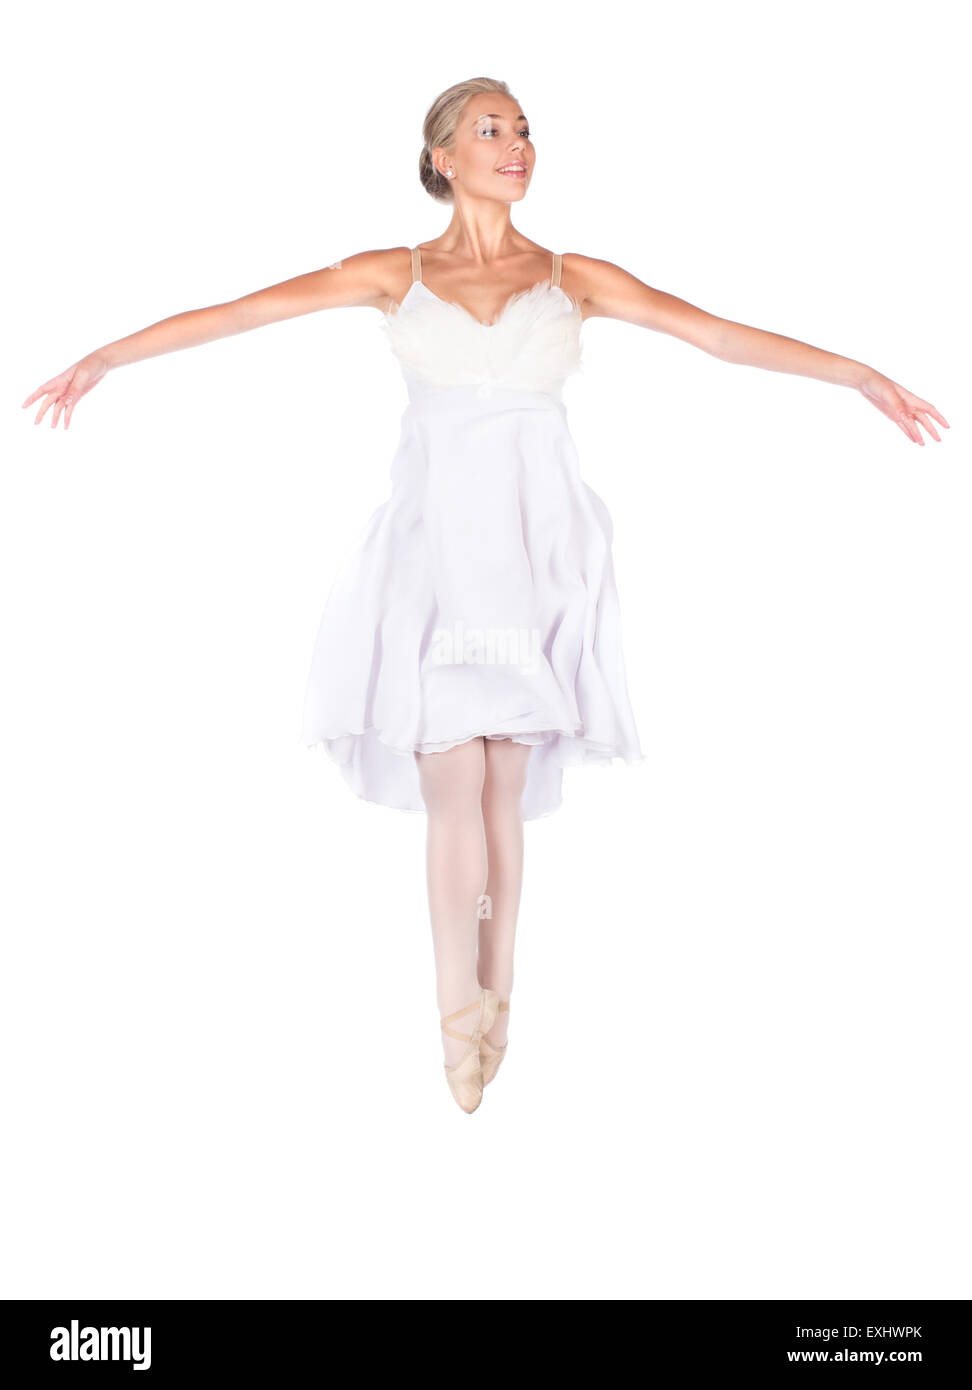 Belle femme ballerine isolé sur un fond blanc. Ballerine porte une robe à plumes blanches et pointes. Banque D'Images